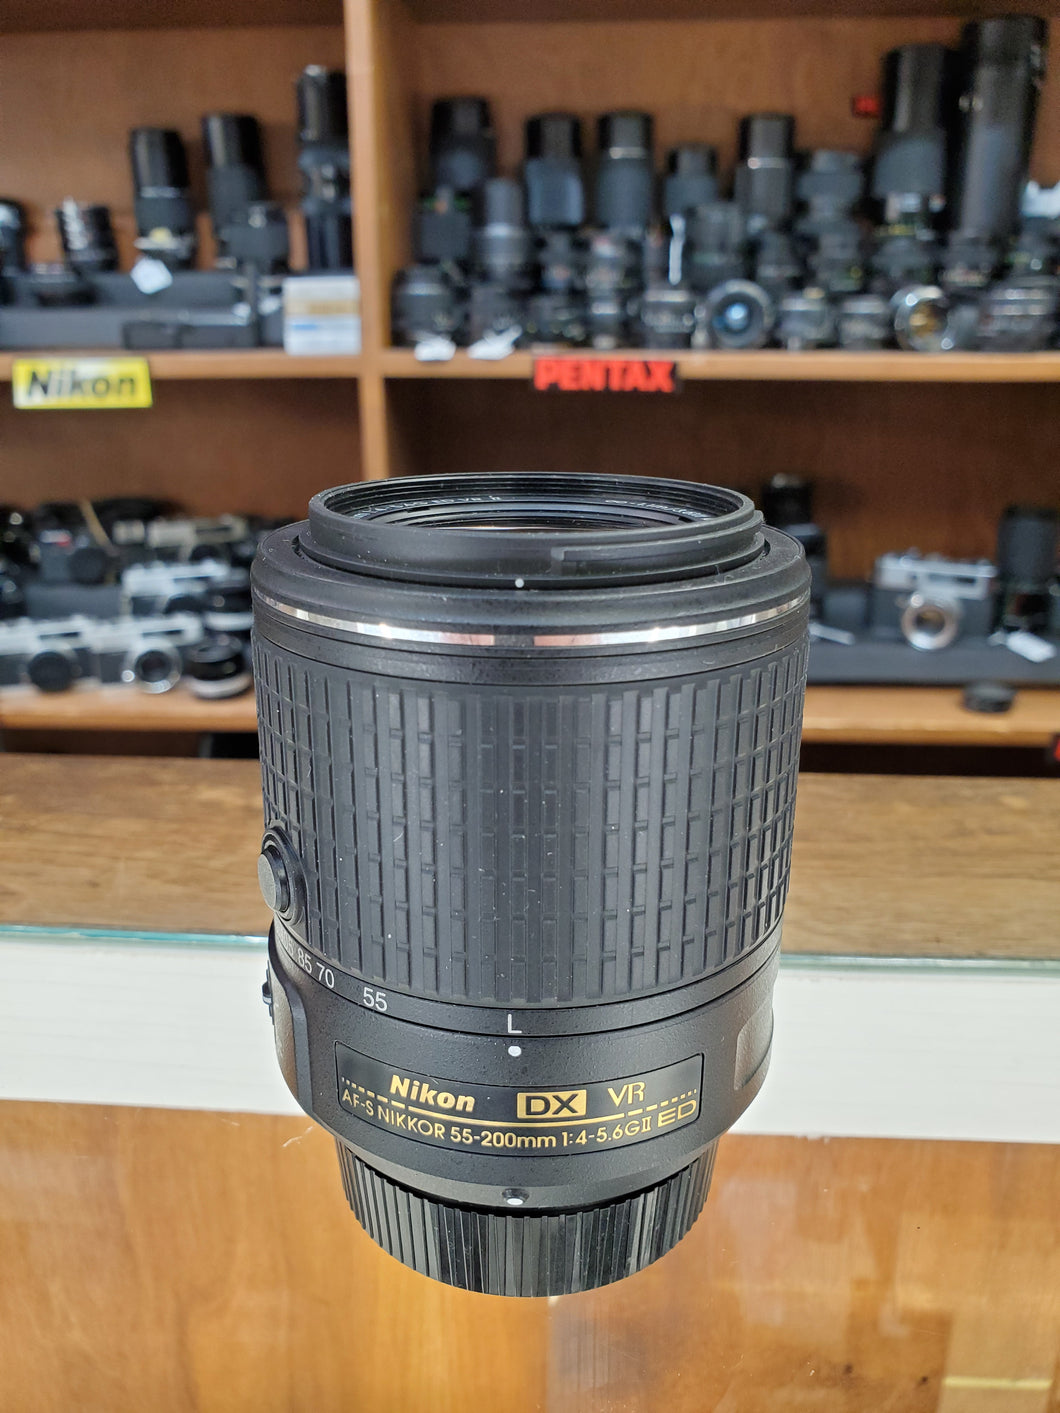 AF-S DX NIKKOR 55-200mm f/4-5.6G ED VR II Lens - Used Condition 10